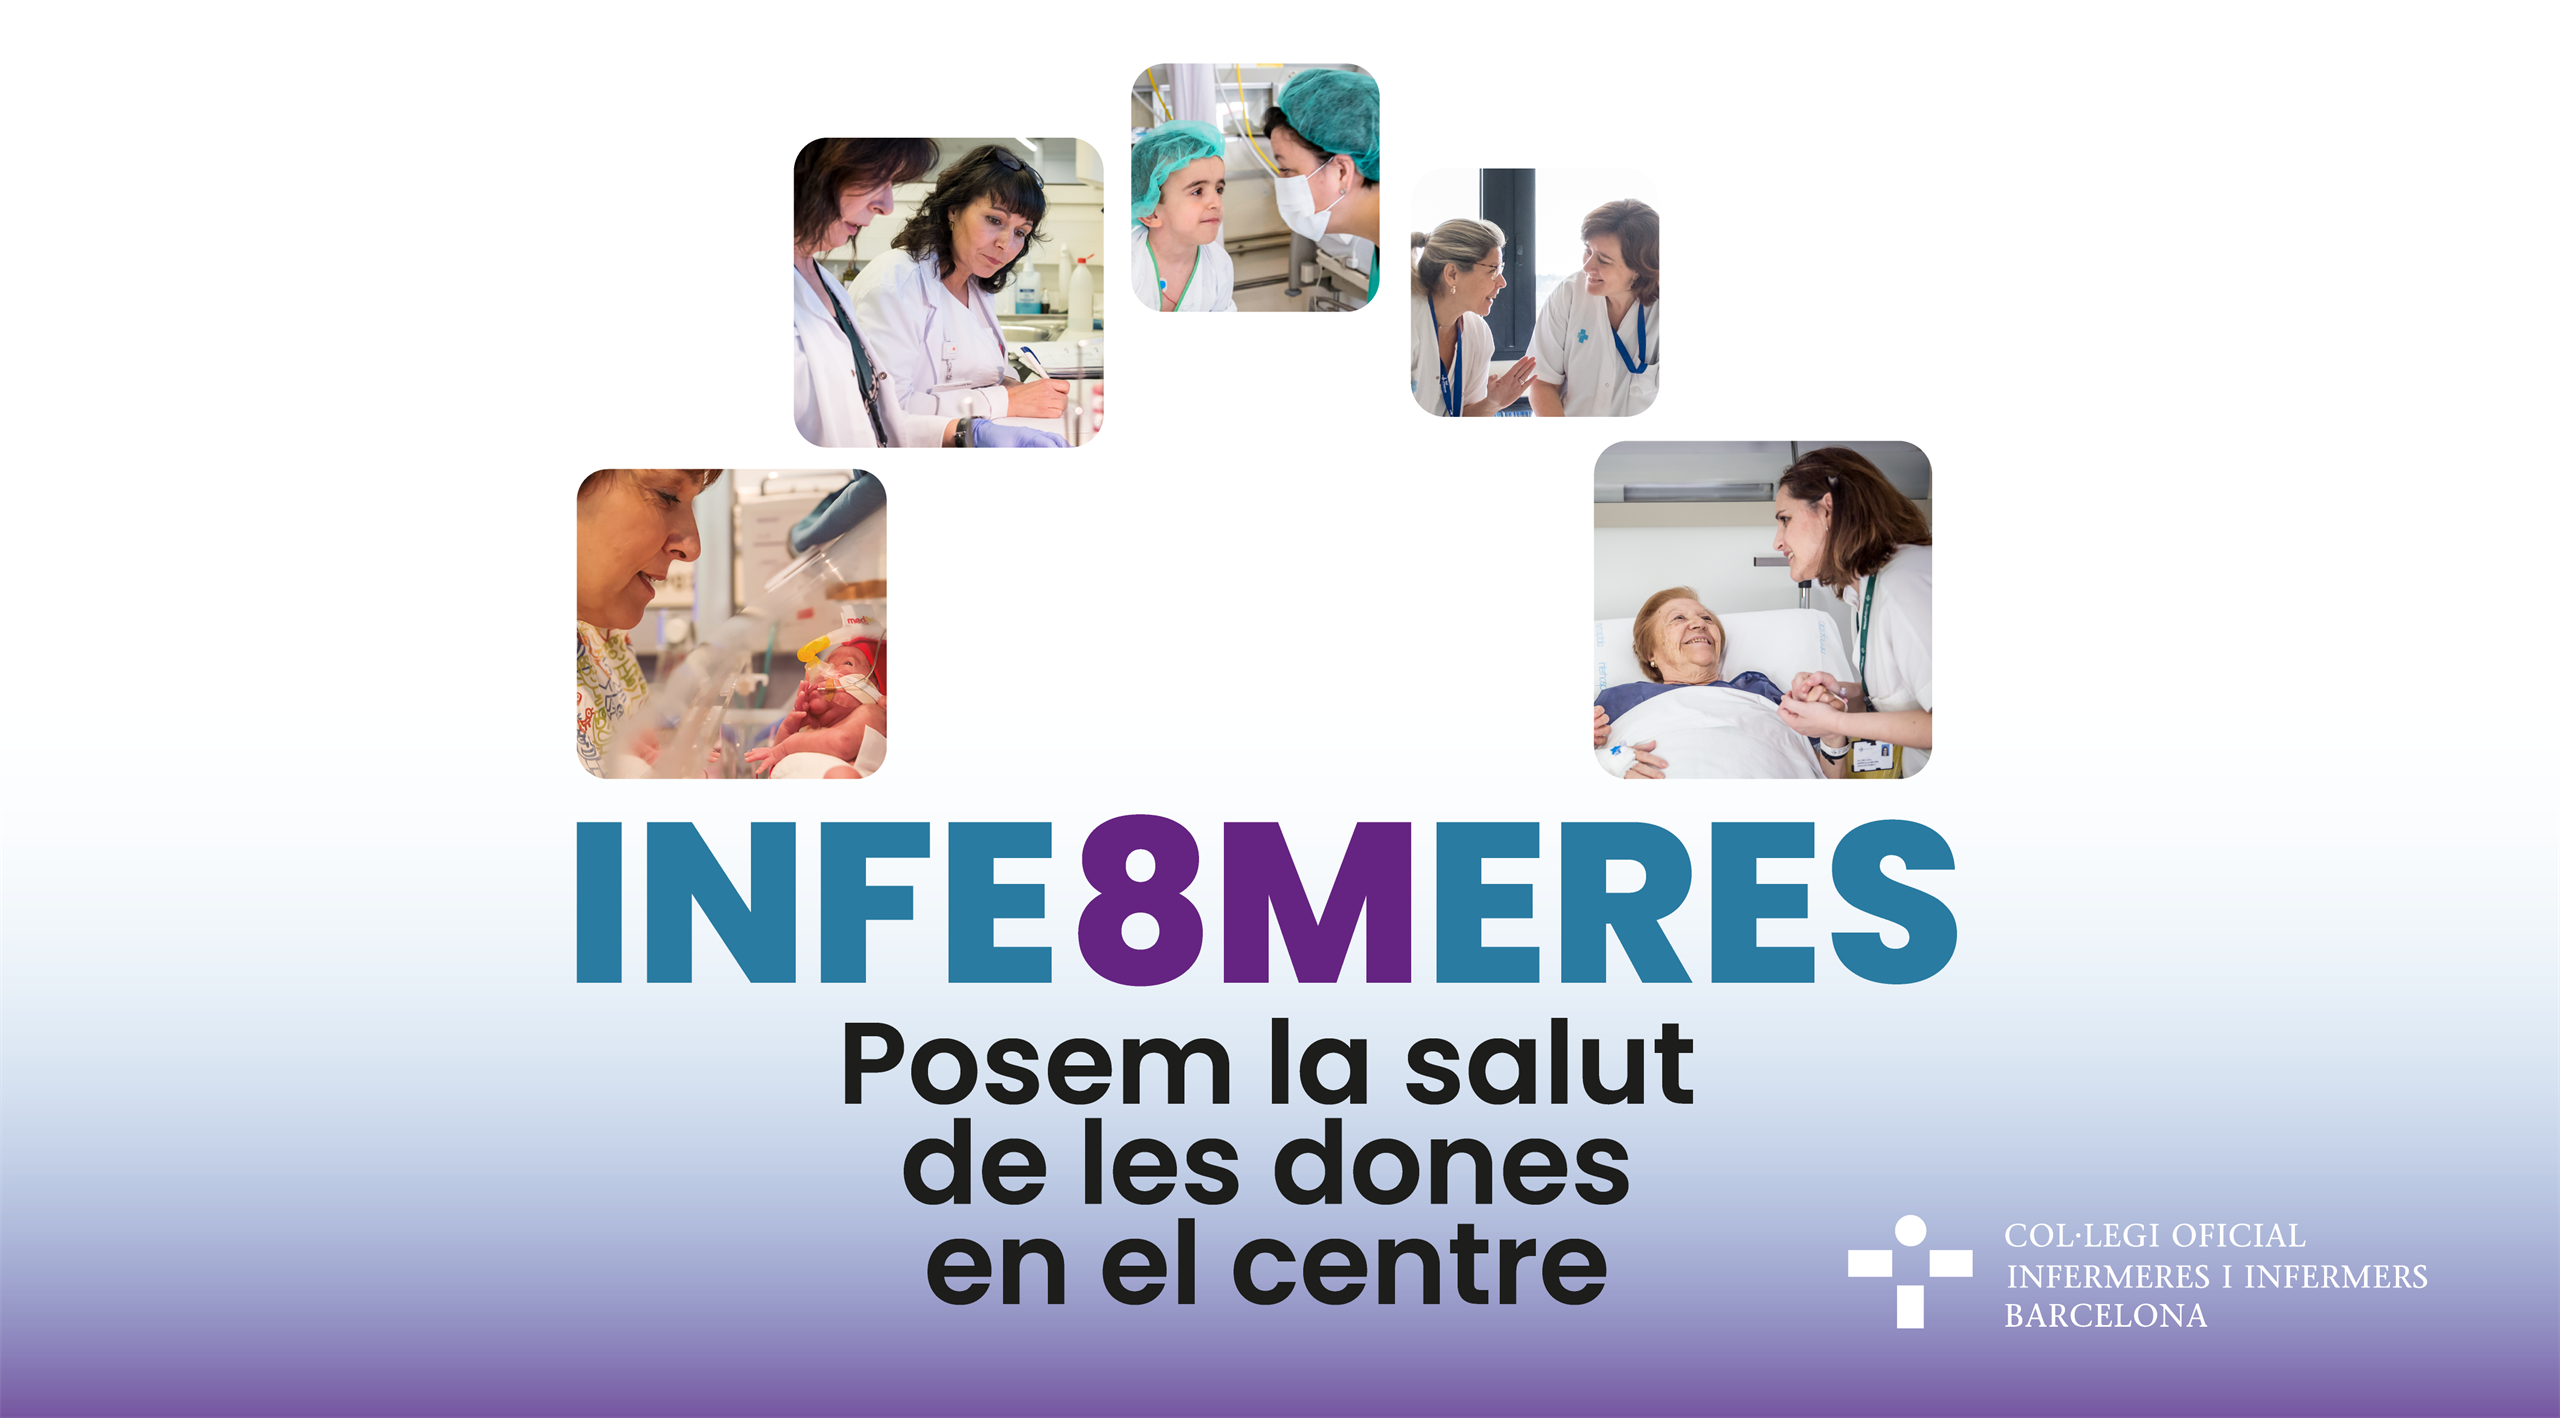 Les infermeres de Barcelona posen la salut de les dones en el centre pel 8M